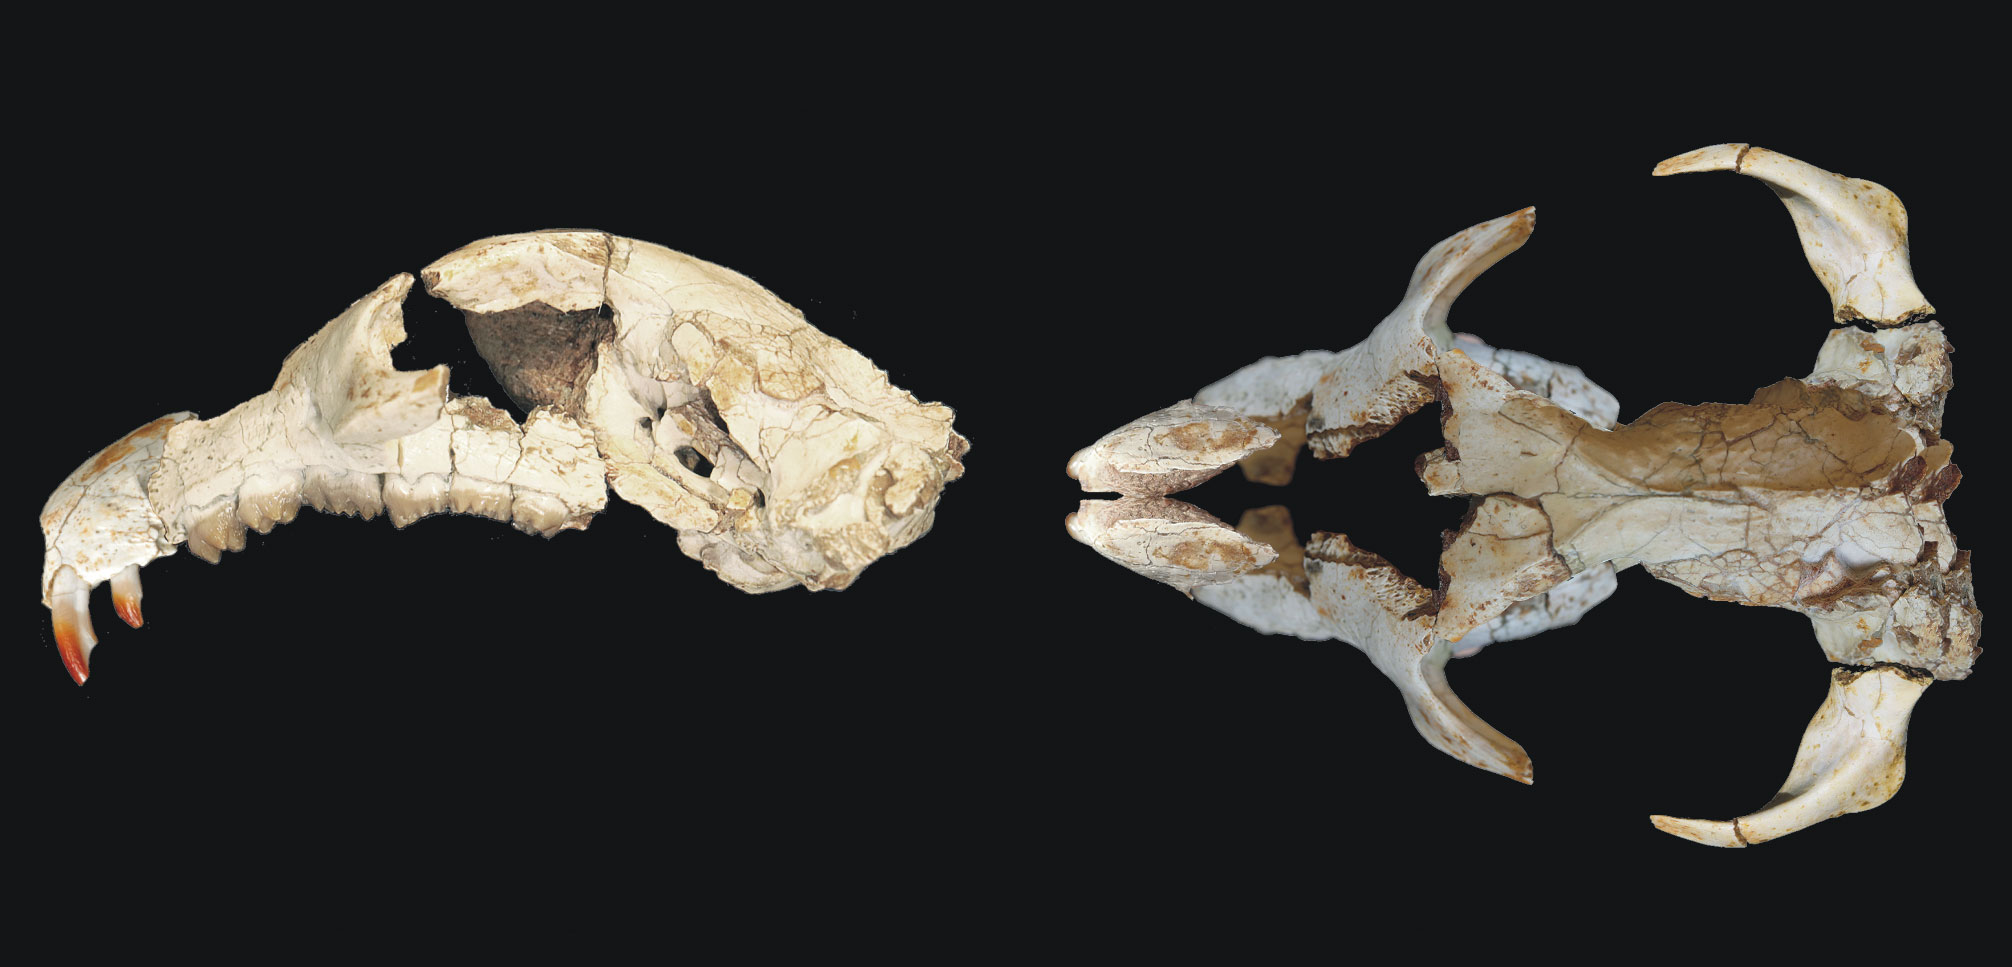 Skull of cretaceous mammal Litovoi tholocephalos